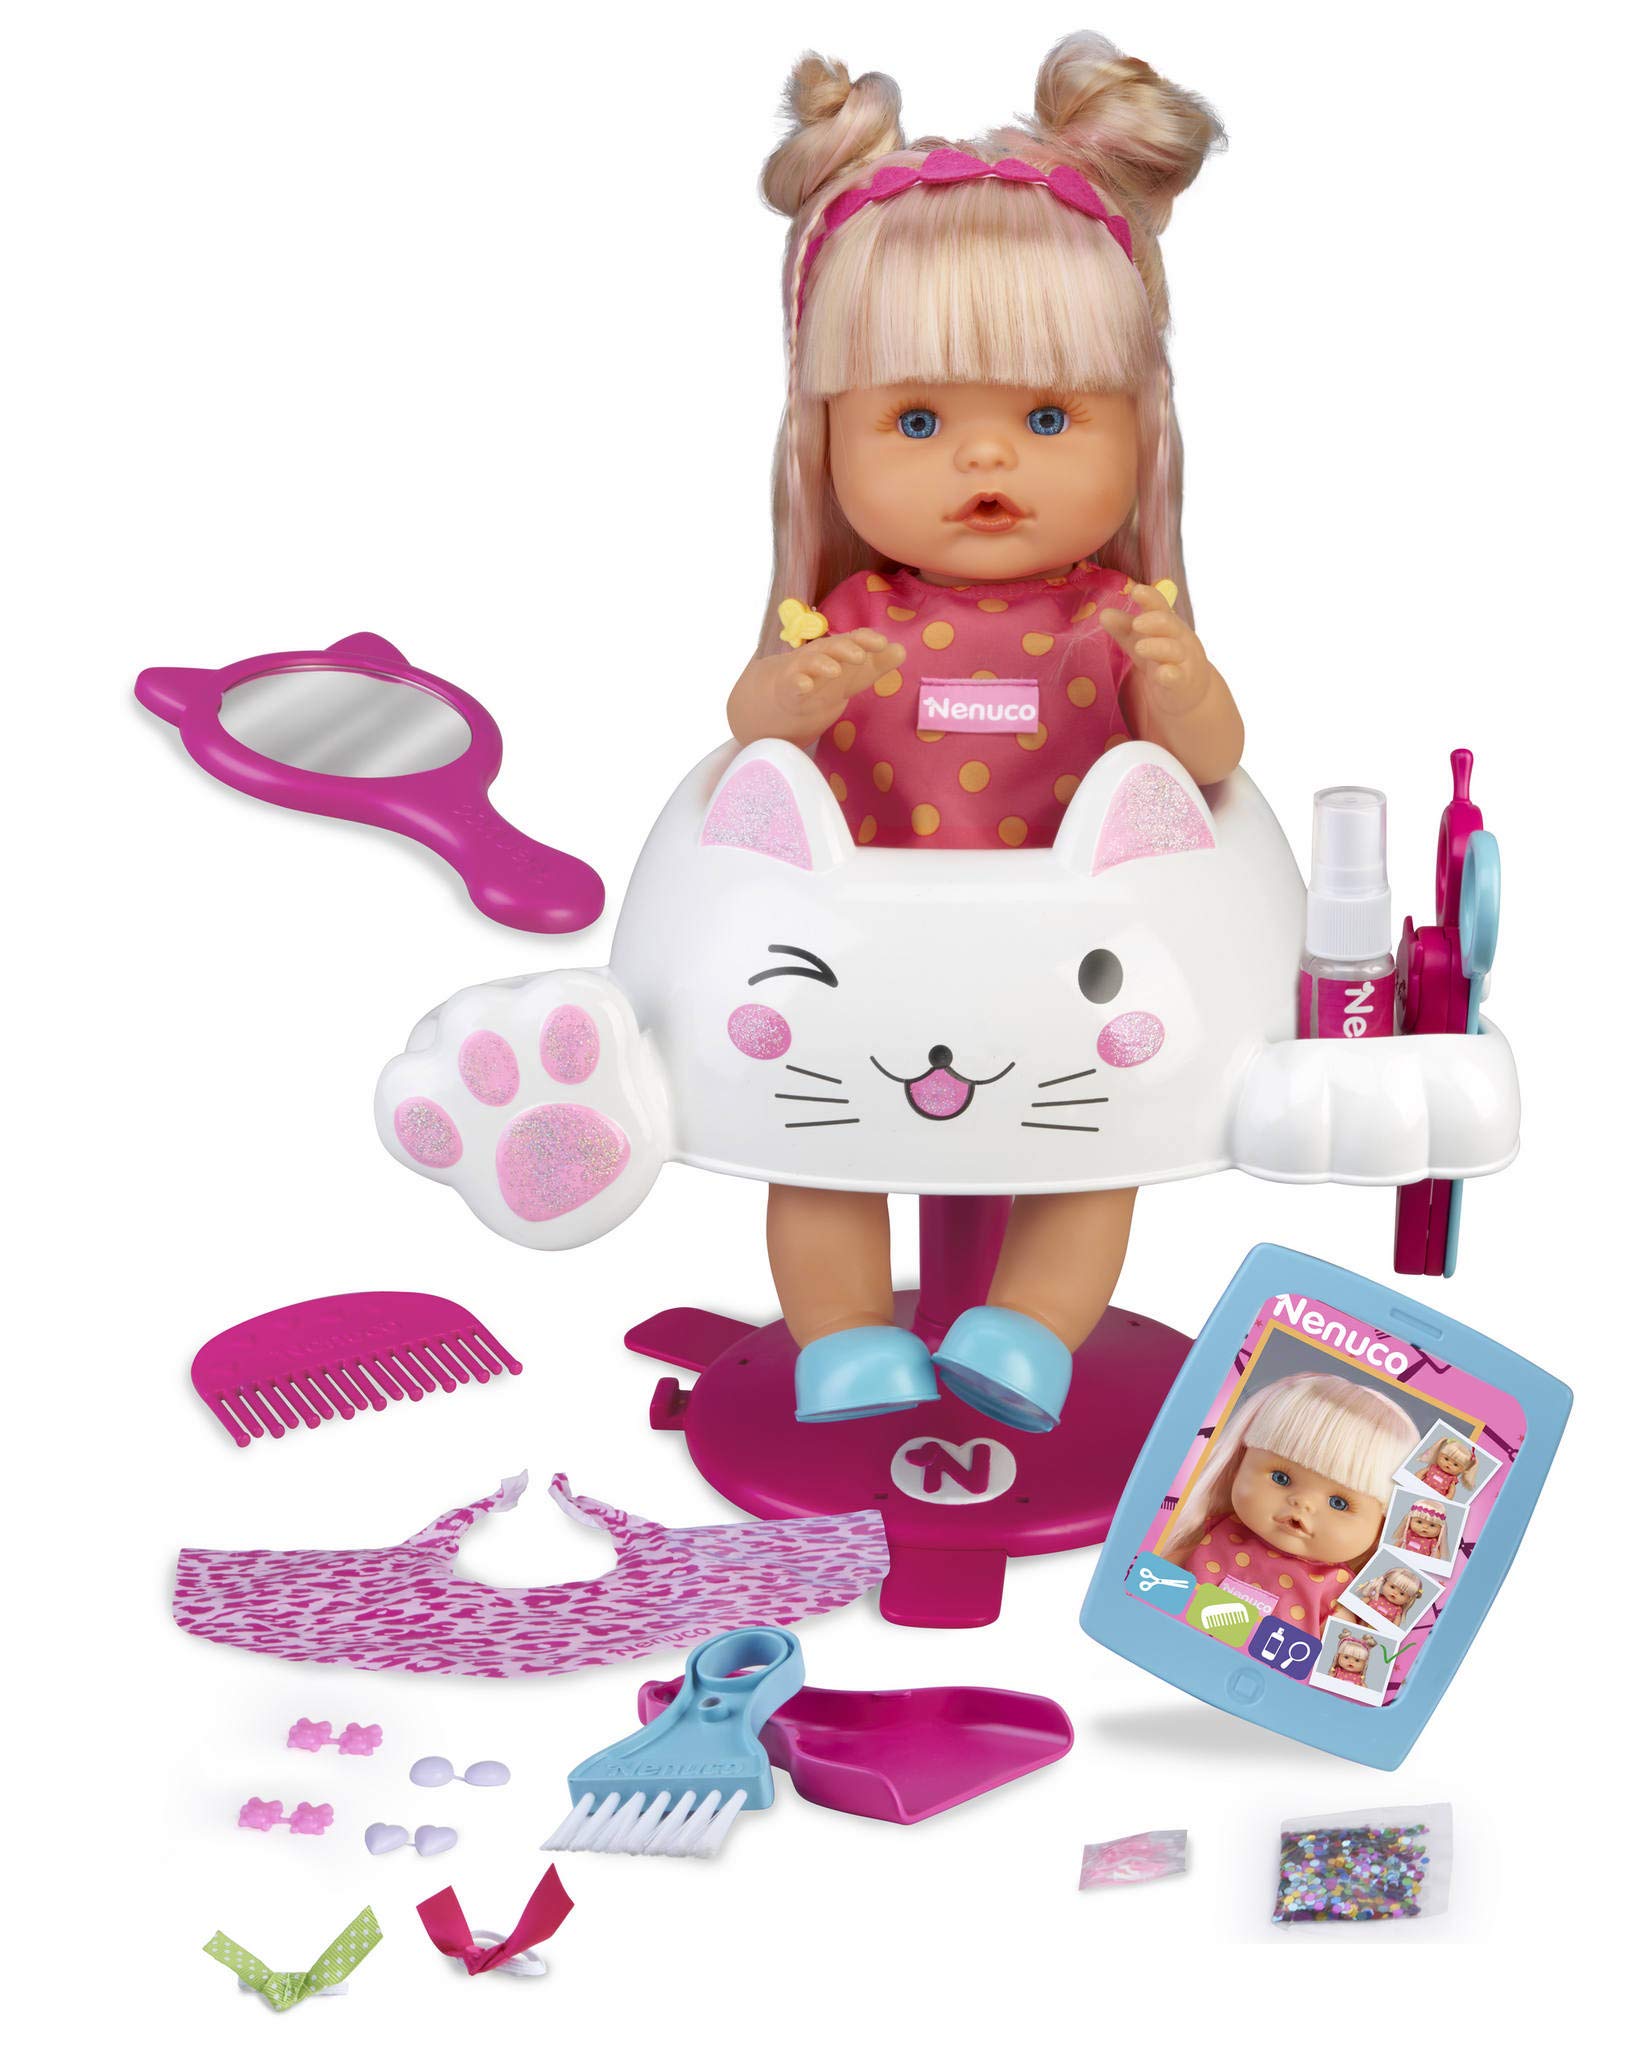 Nenuco by Famosa 700015153 Glitter Hairdresser Baby Doll